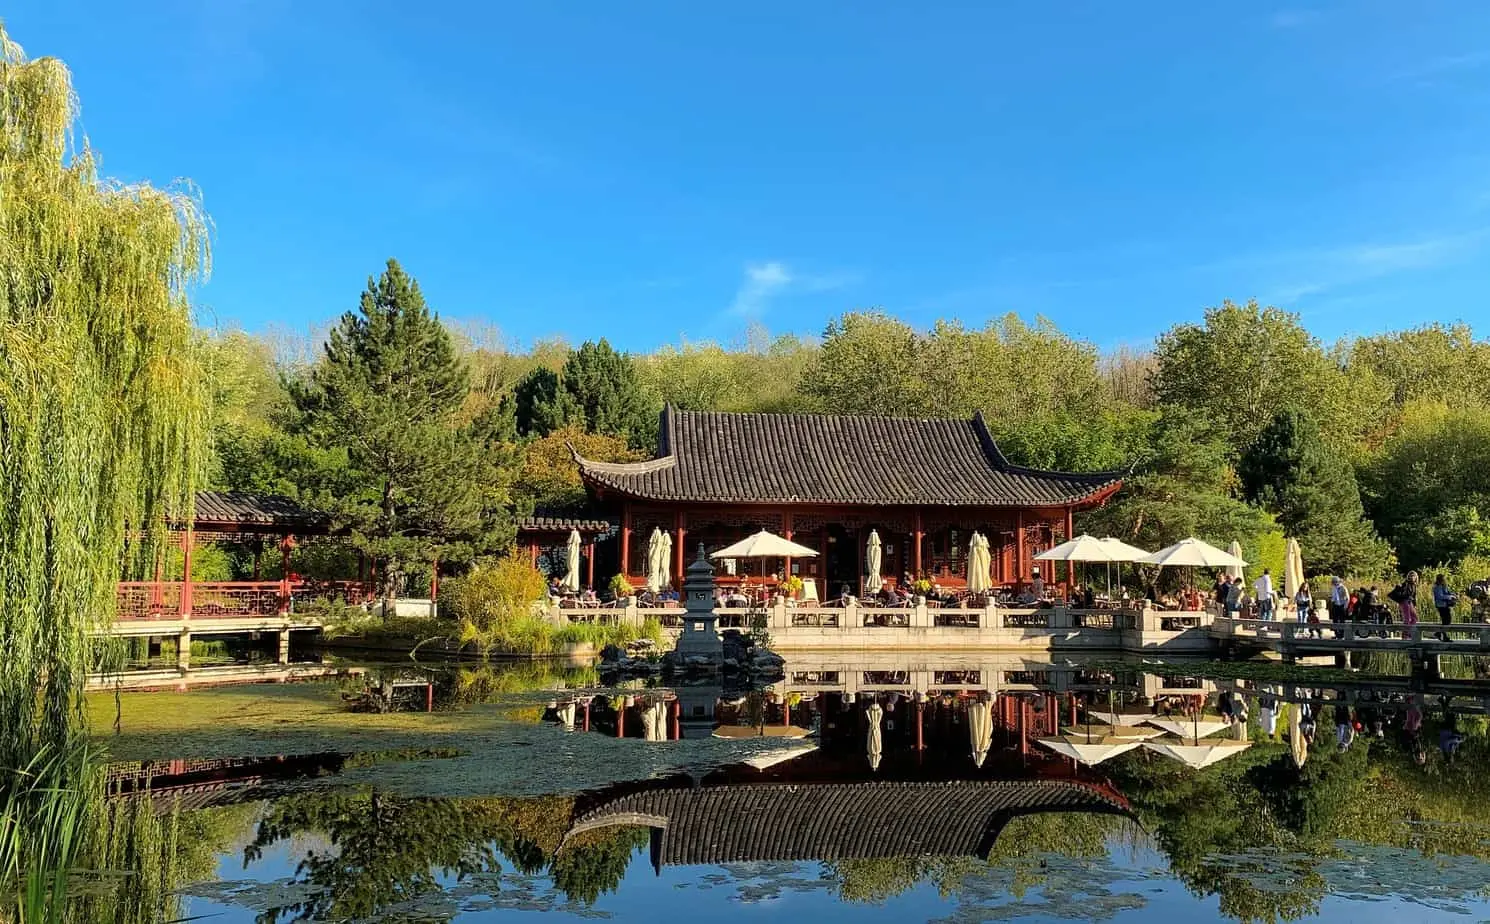 حديقة صينية بها بركة وأشجار تعرض التاريخ الغني للشاي الصيني.